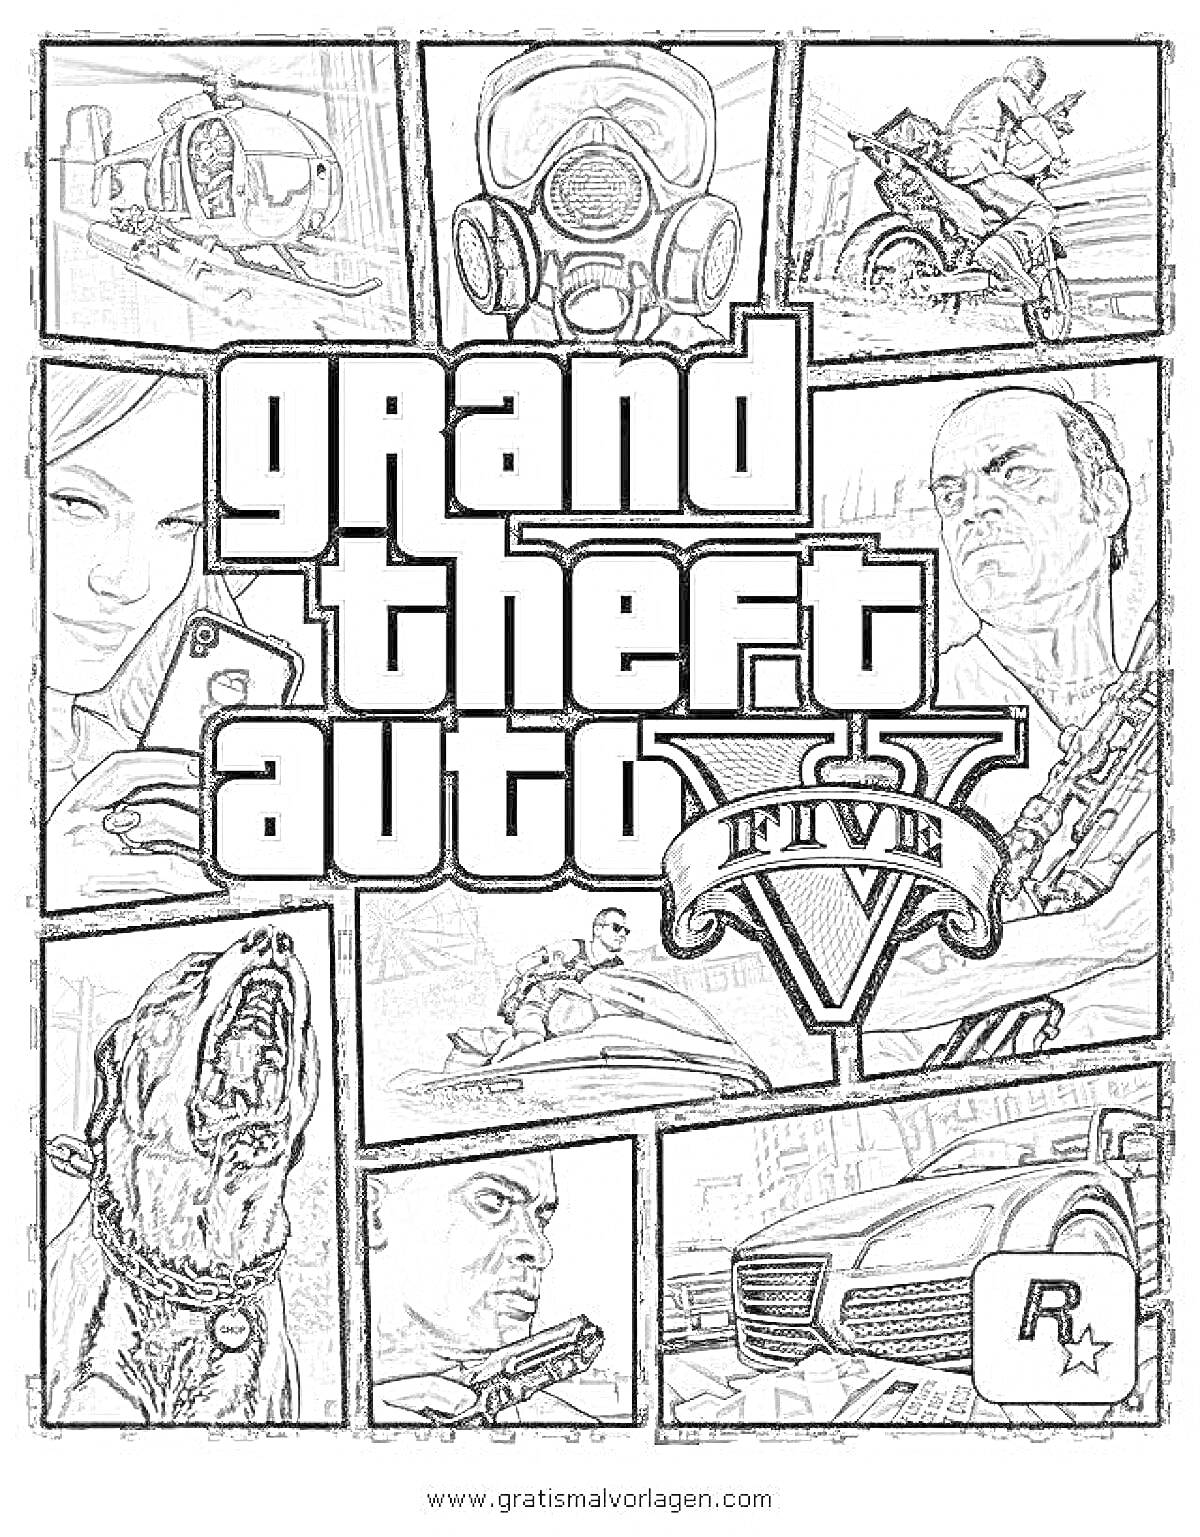 Обложка GTA V с изображением персонажей, вертолета, собаки, автомобиля, водного транспорта, газовой маски и логотипа Rockstar Games